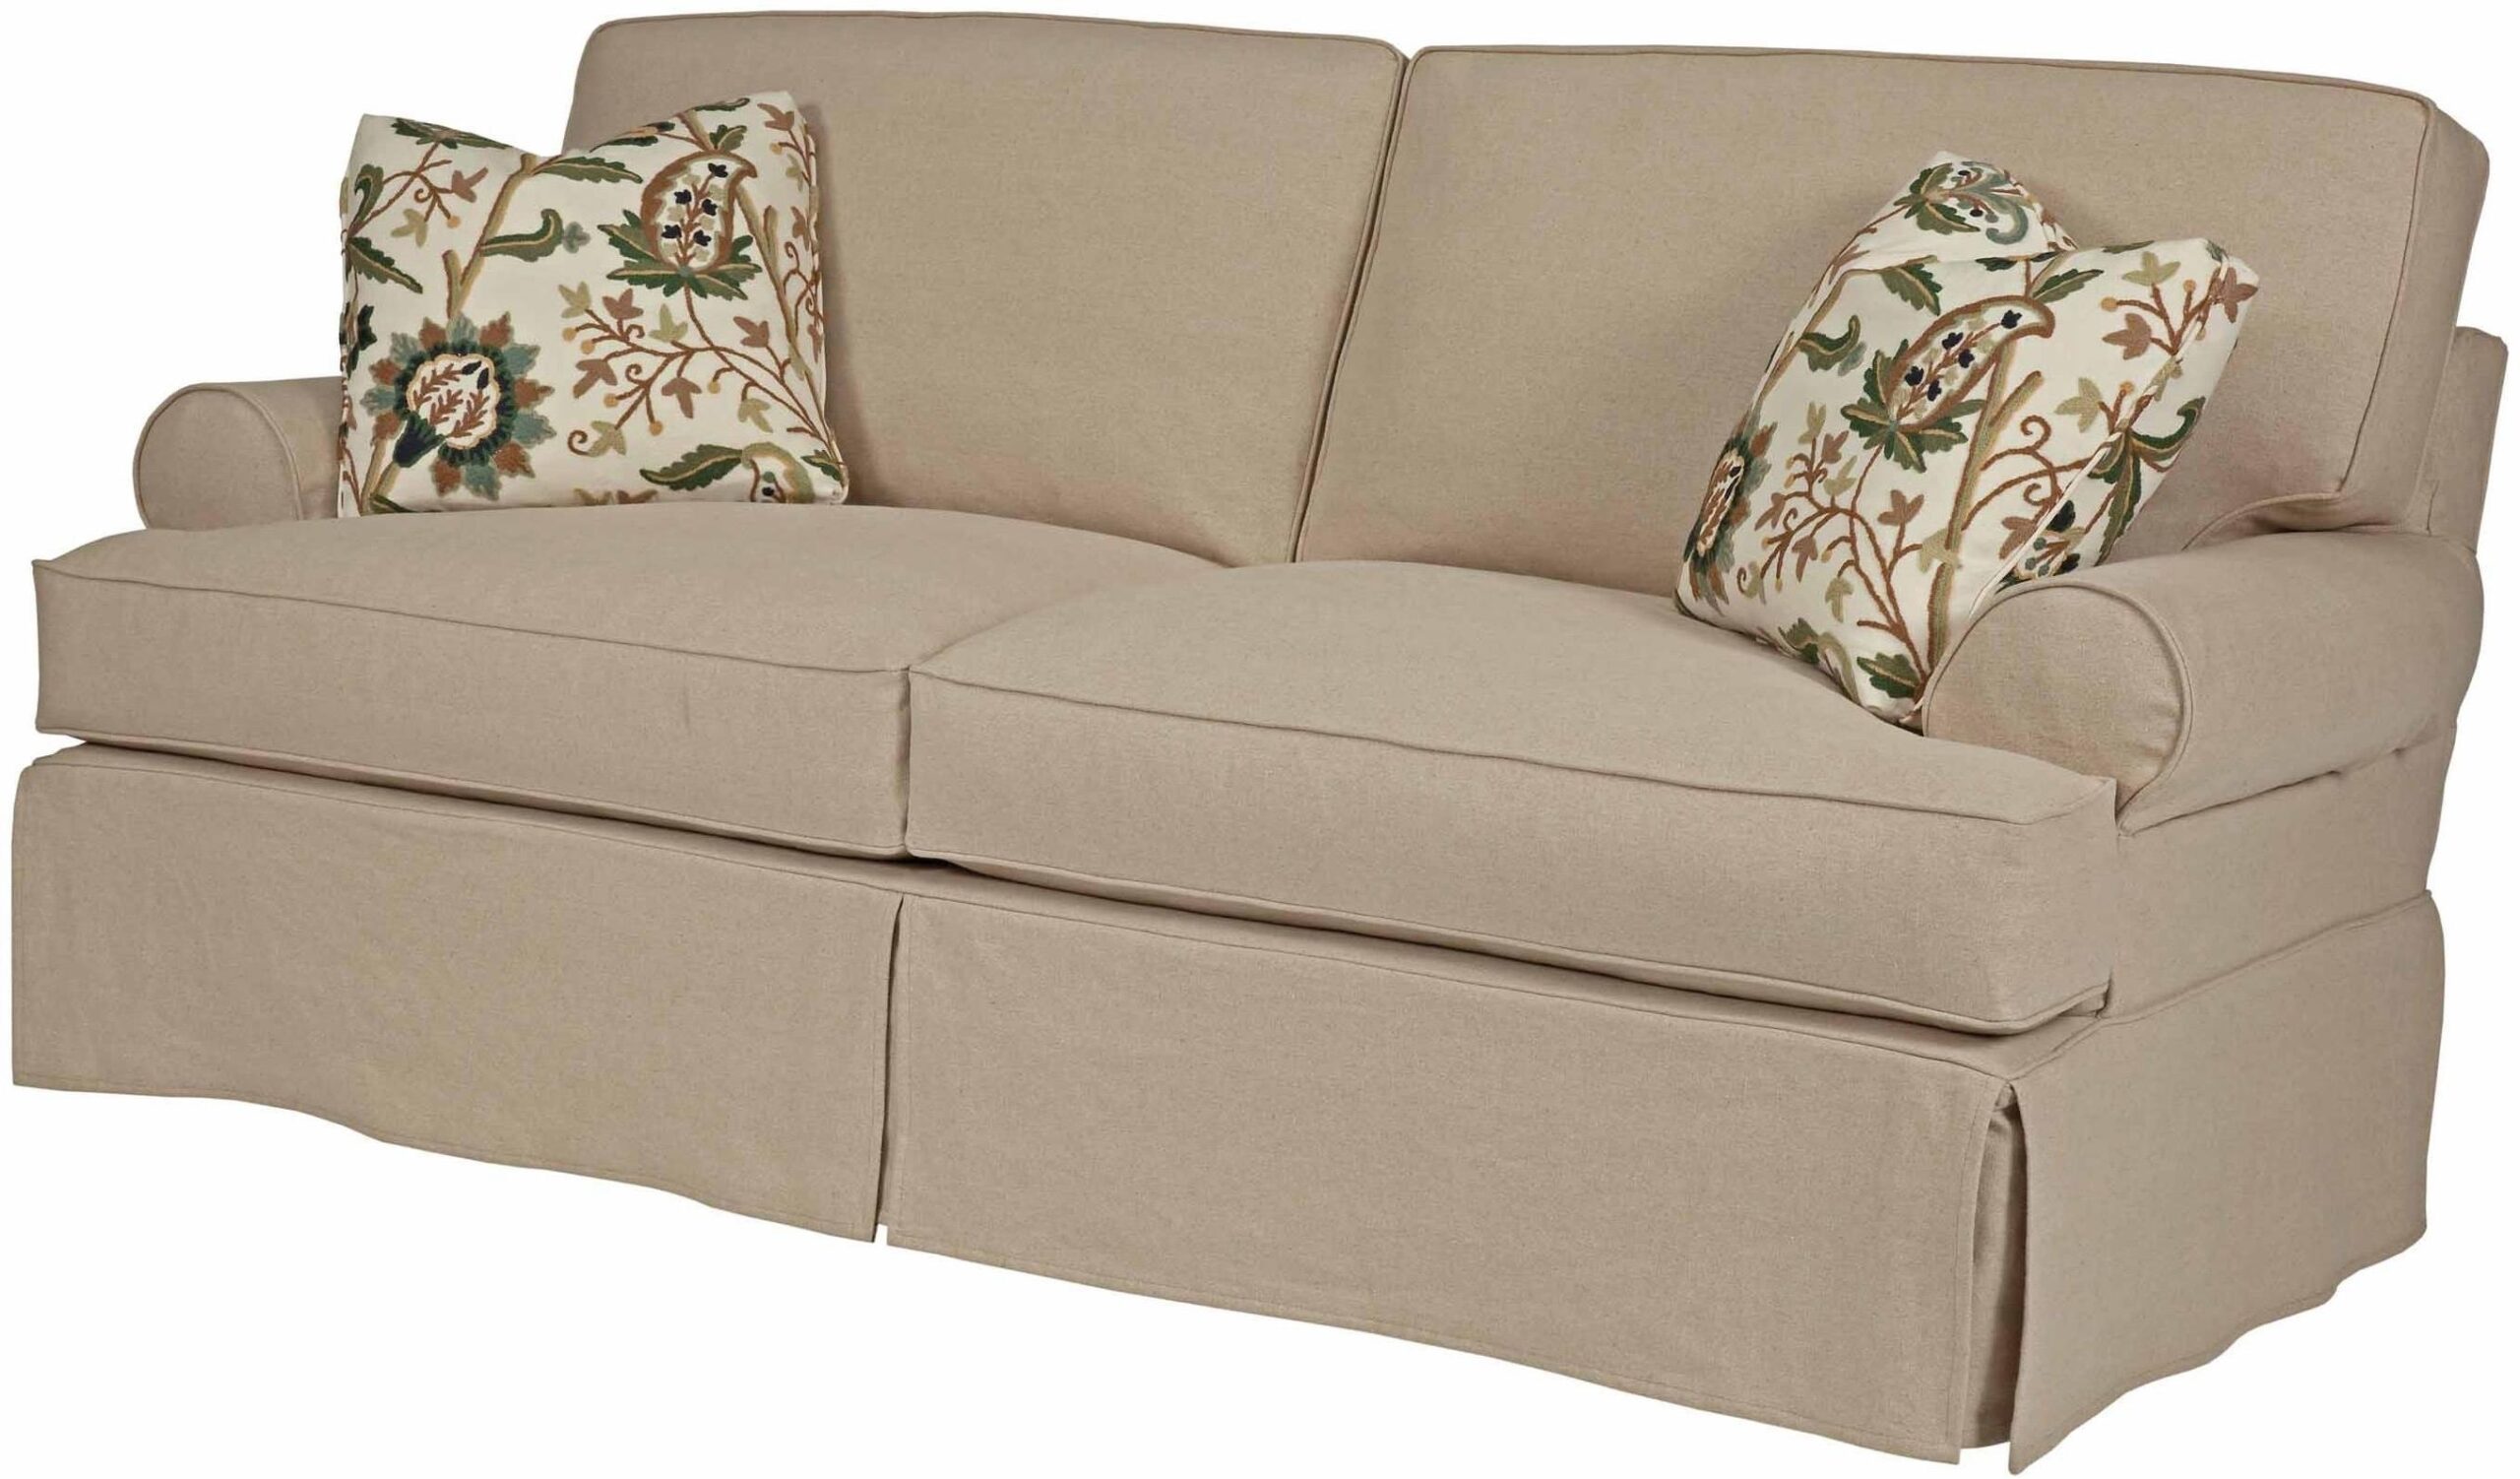 Sofa Slipcover Ideas – decorafit.com